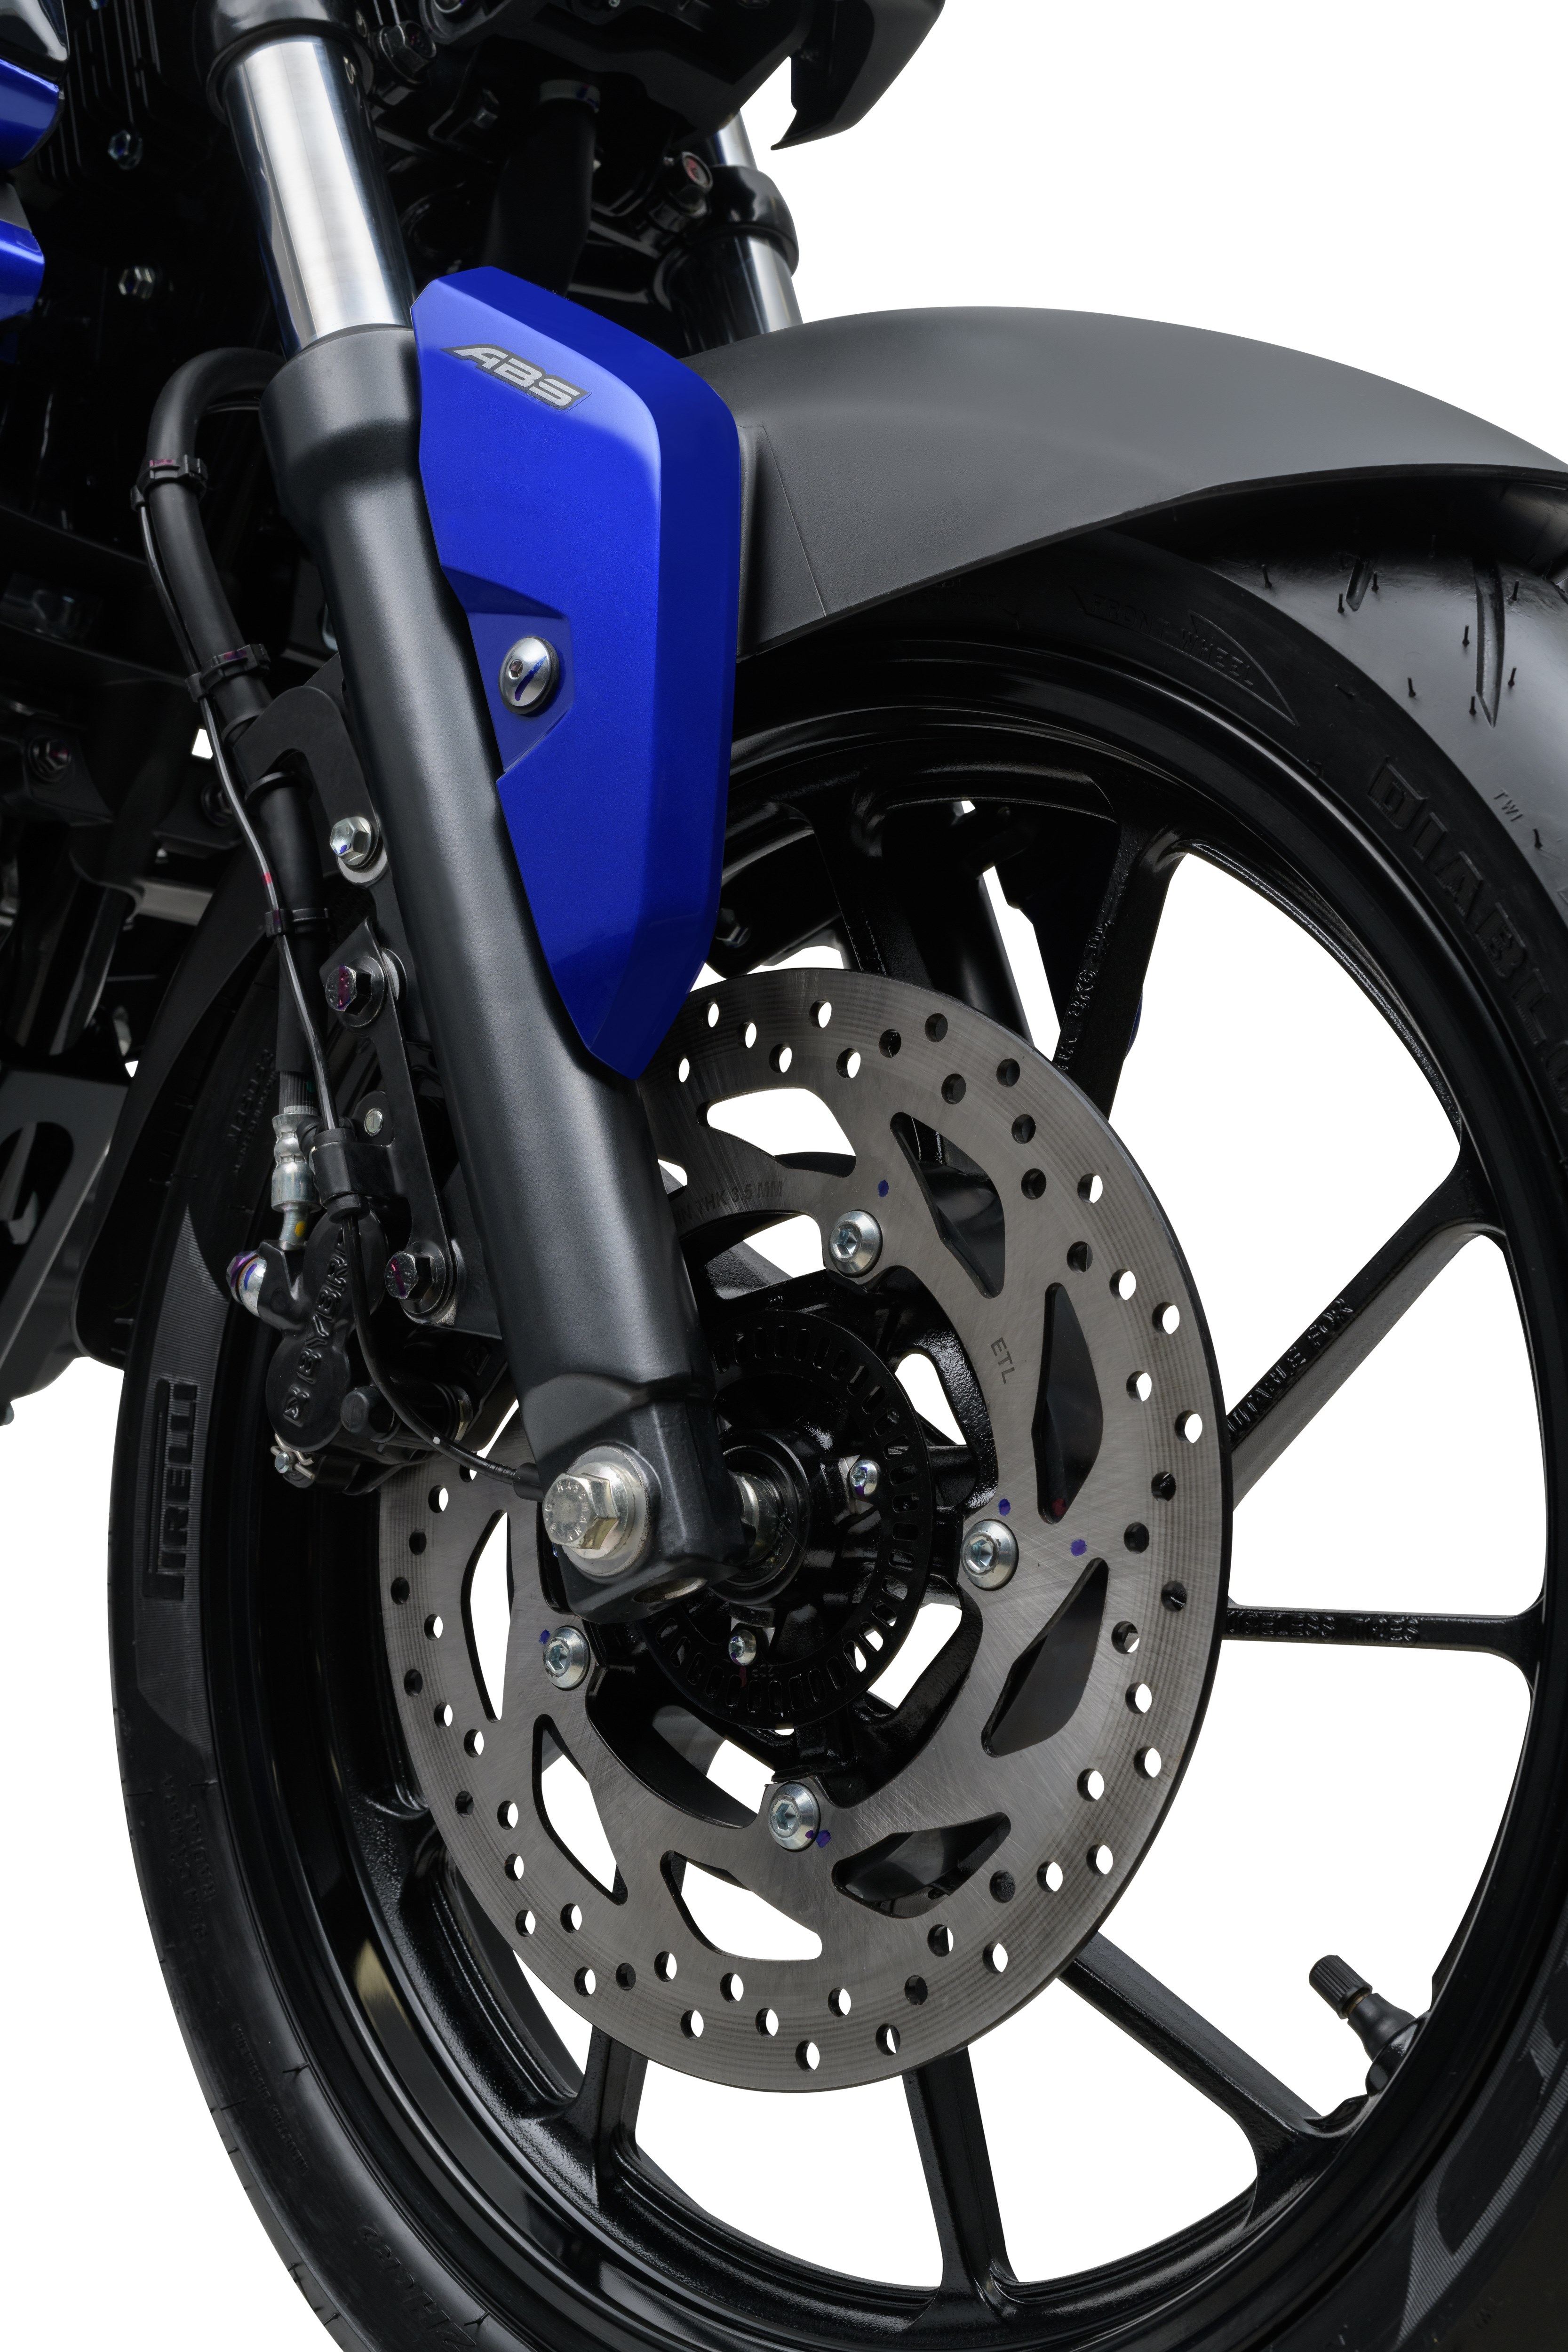 Yamaha Fazer FZ15 azul detalhe da roda dianteira.